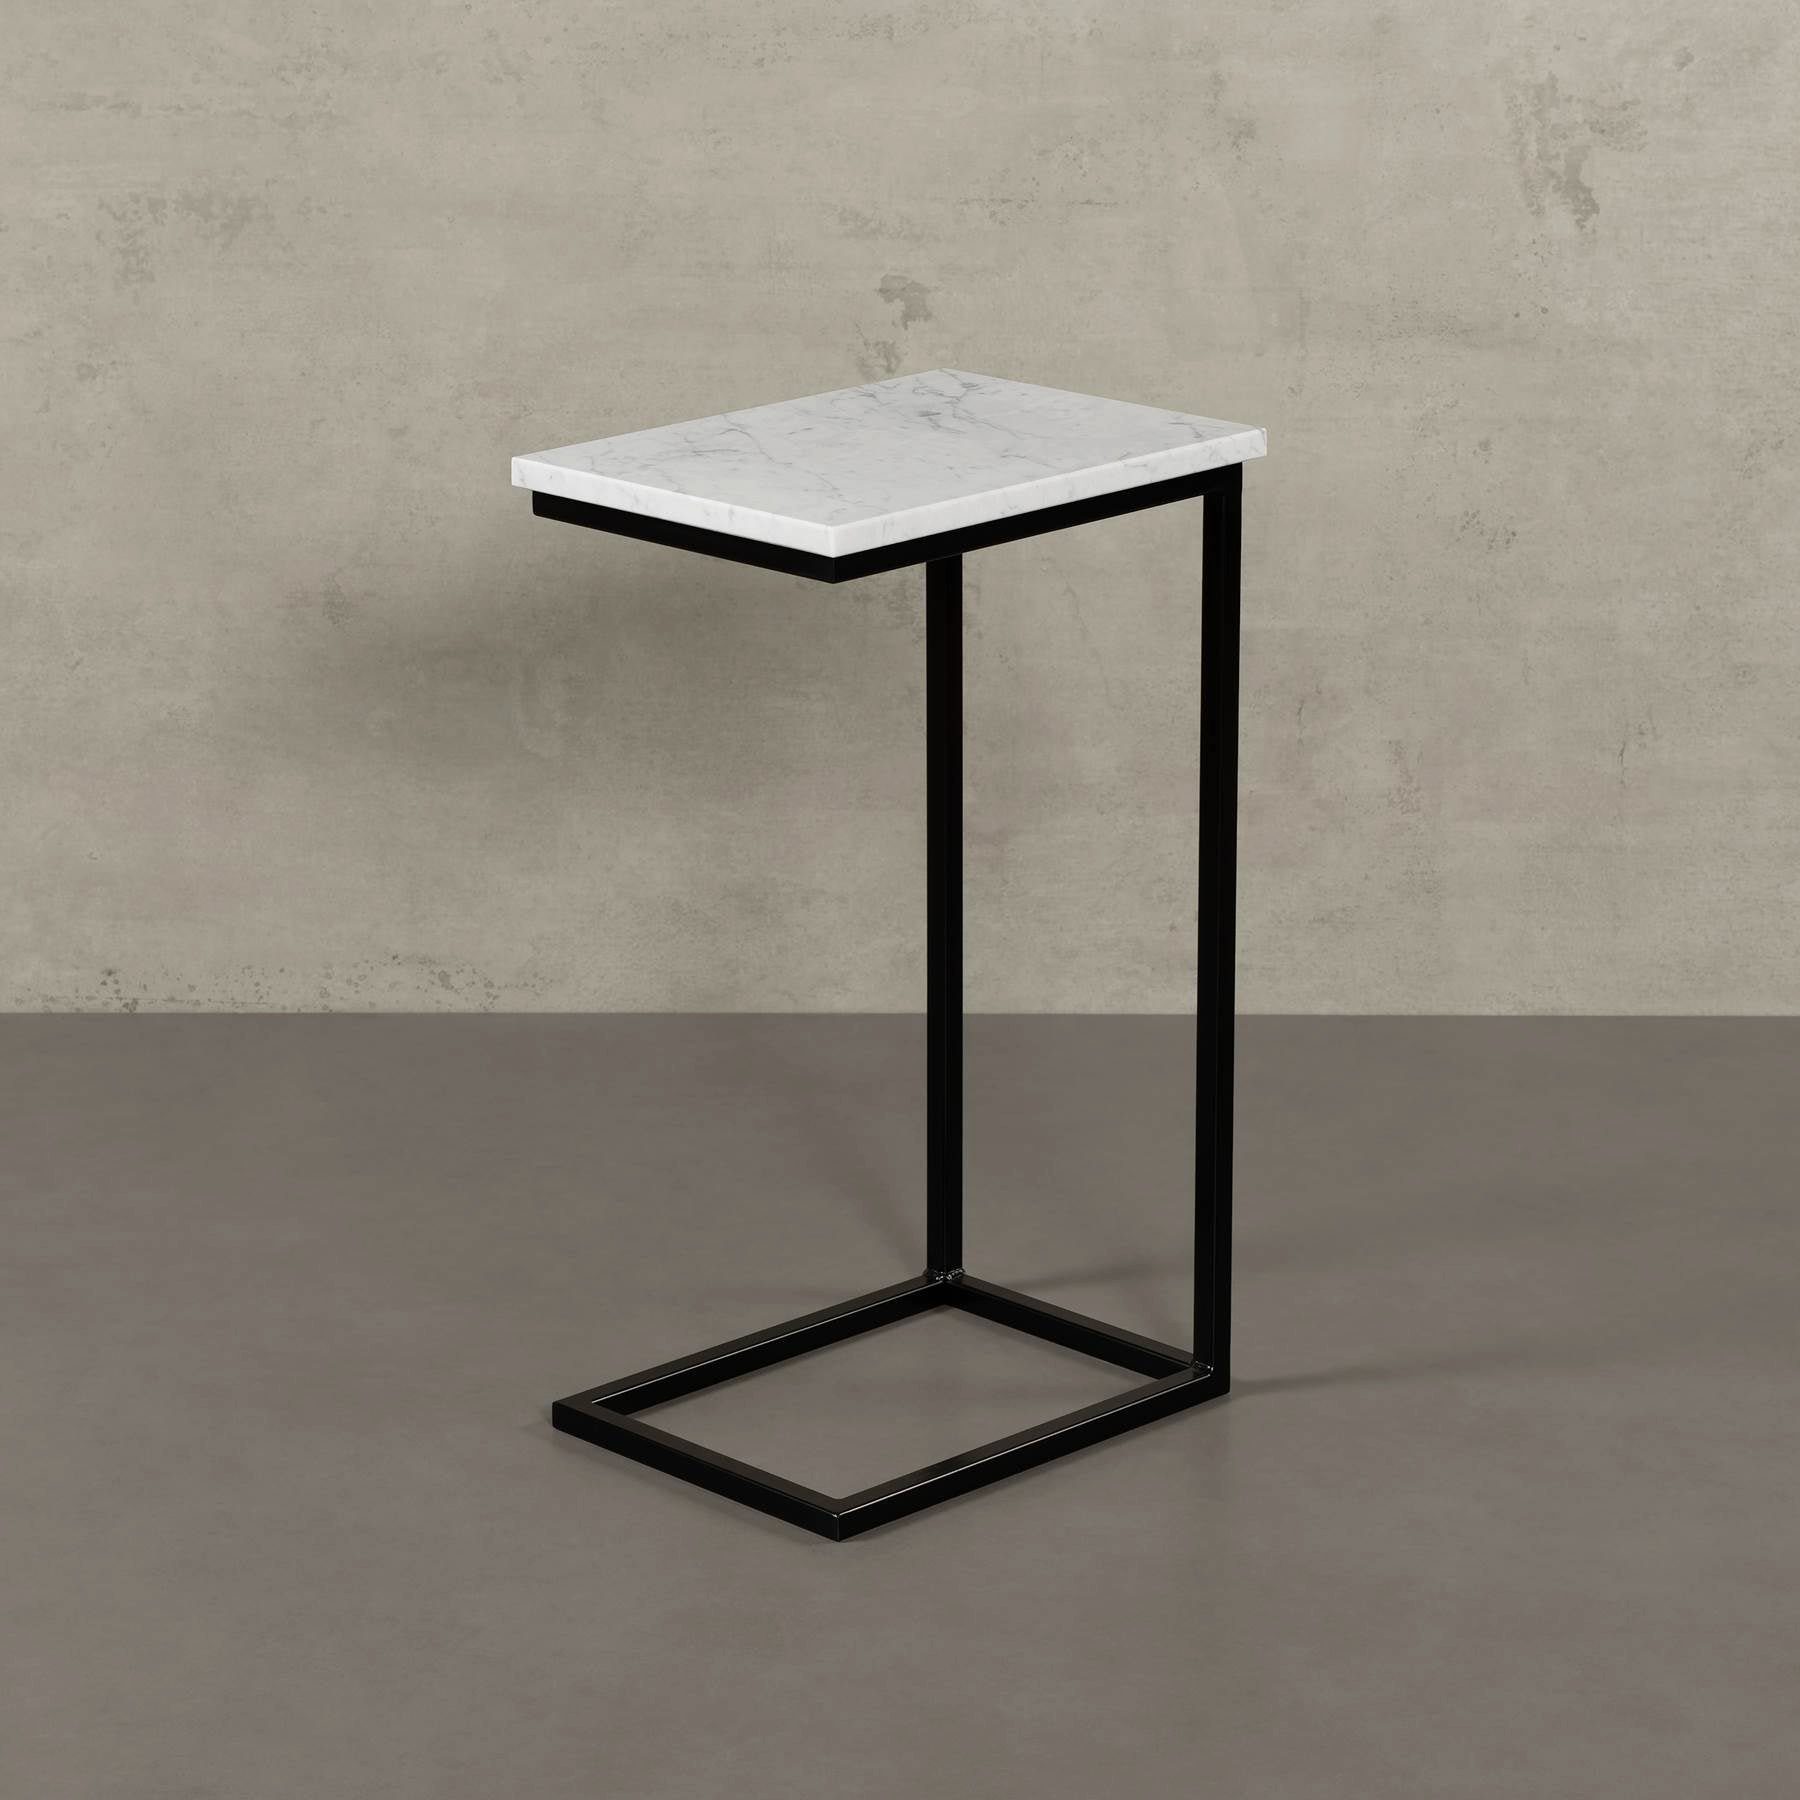 MAGNA Atelier Couchtisch STOCKHOLM mit ECHTEM MARMOR, Wohnzimmer Tisch eckig, Laptoptisch, schwarz Metallgestell, 40x30x68cm Bianco Carrara